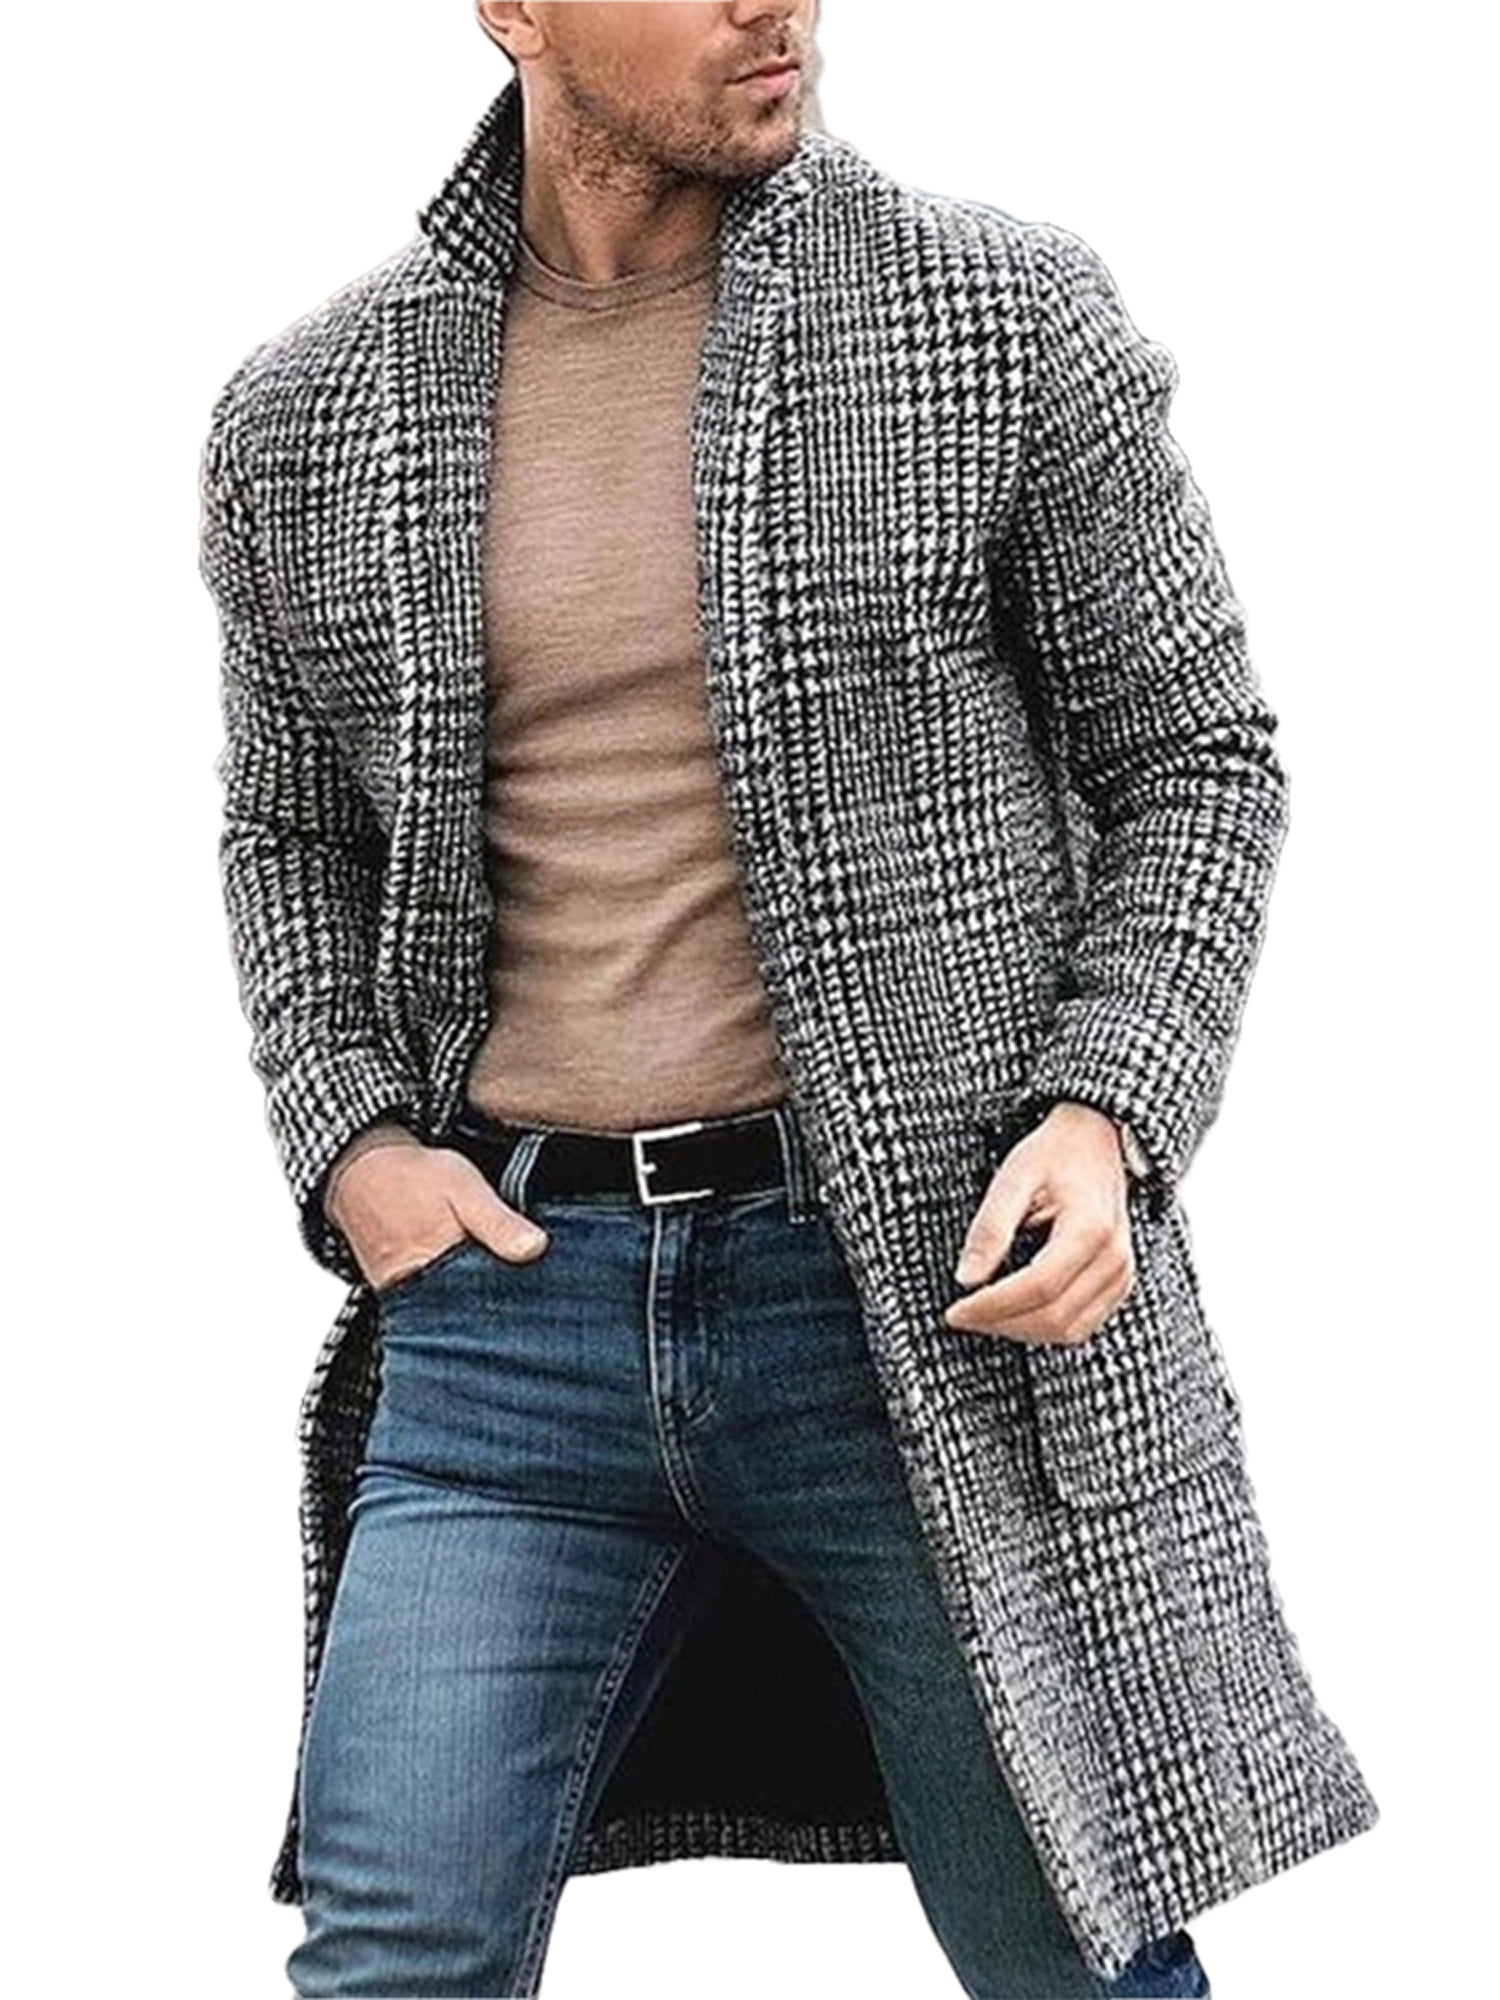 Winter Men's Long Smart Button Outwear Jacket Warm Trench Wool Overcoat Coats